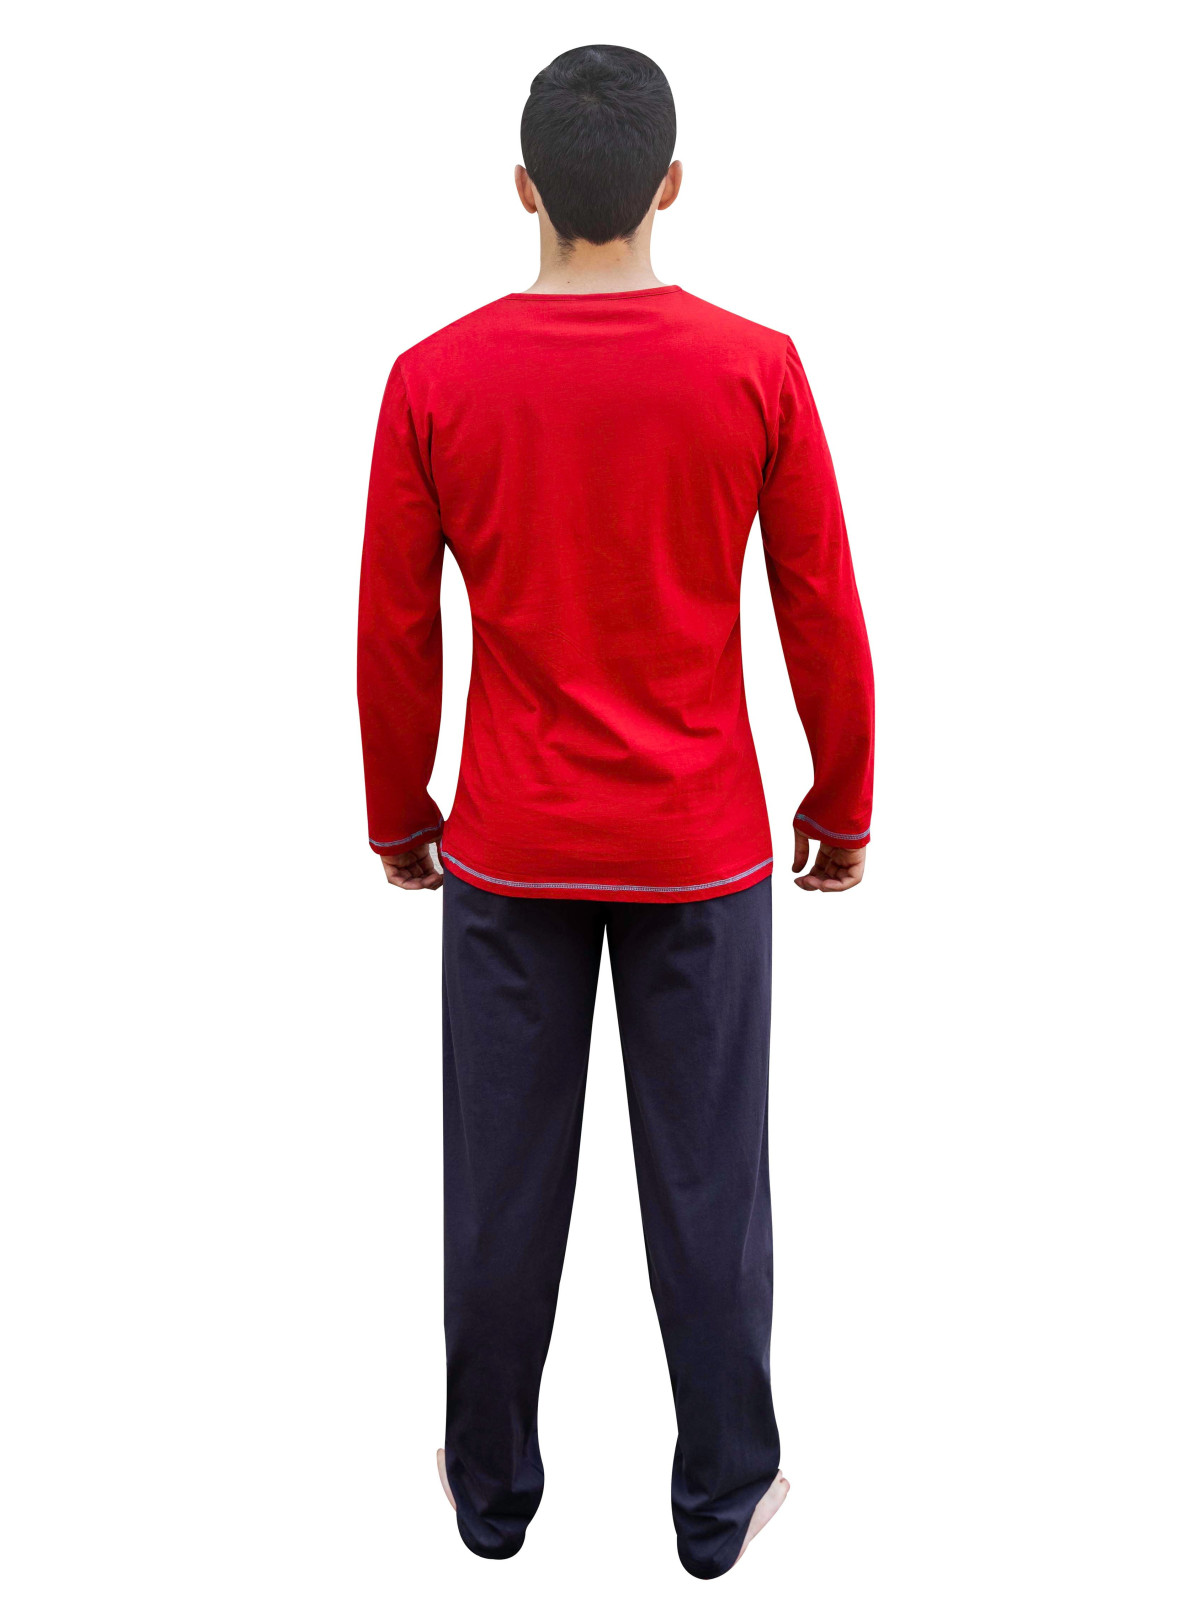 Pyjama long rouge et gris « Idéal »